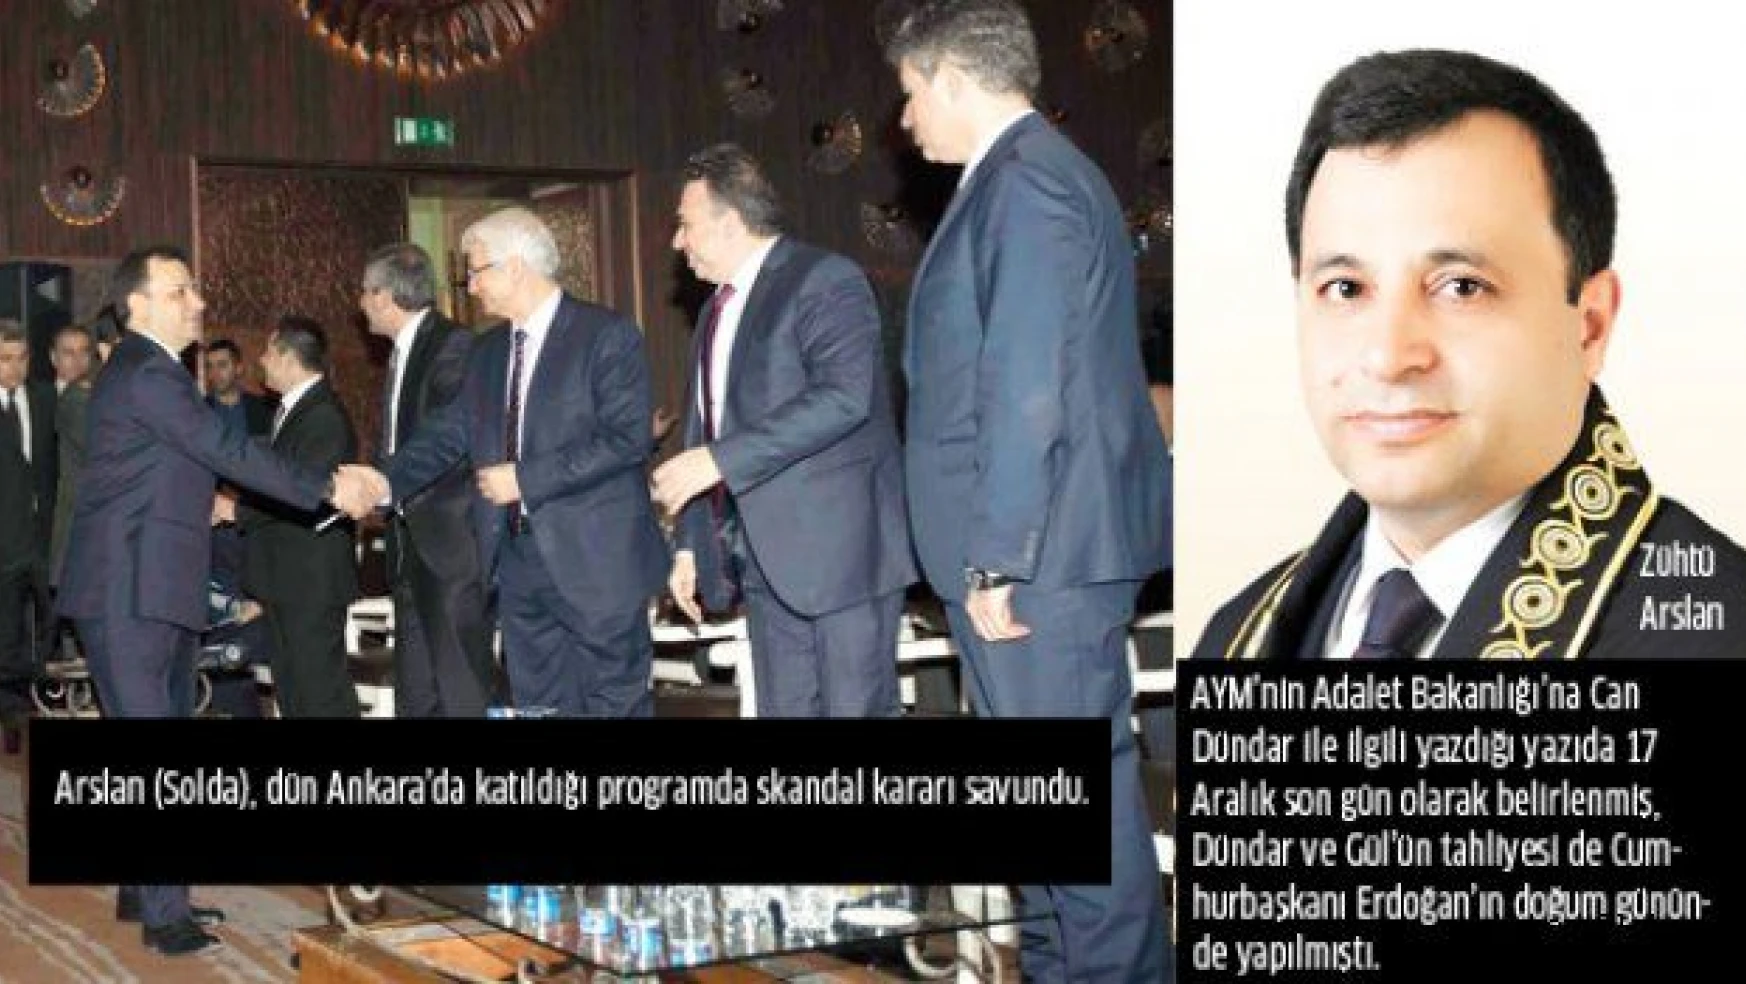 Anayasa Mahkemesi Başkanı hedefte... Star gazetesi, Arslan'ın "çelişkilerini" yazdı